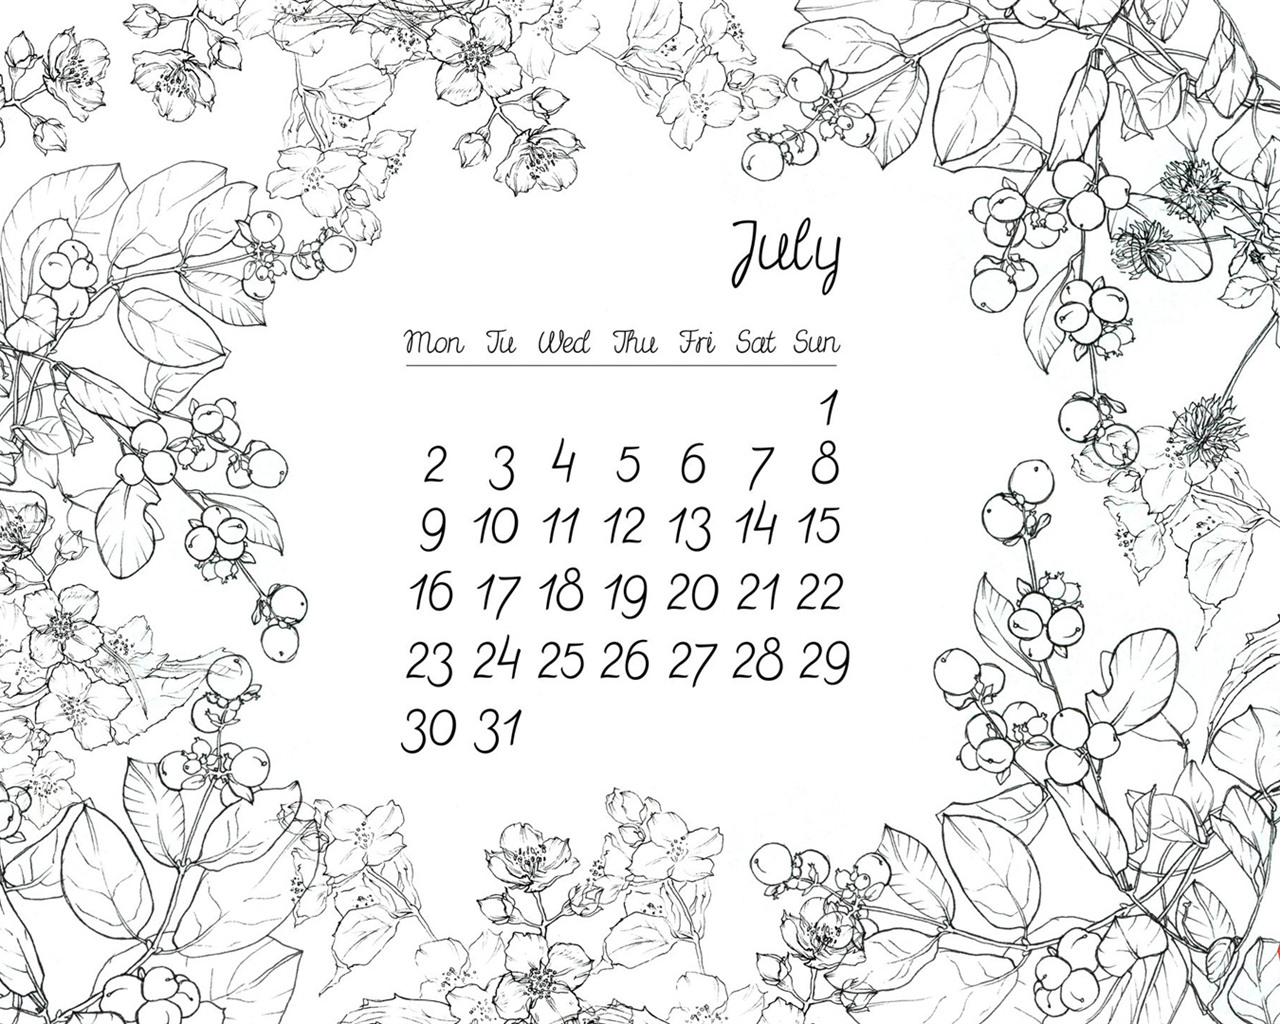 July 2012 Calendar wallpapers (1) #14 - 1280x1024